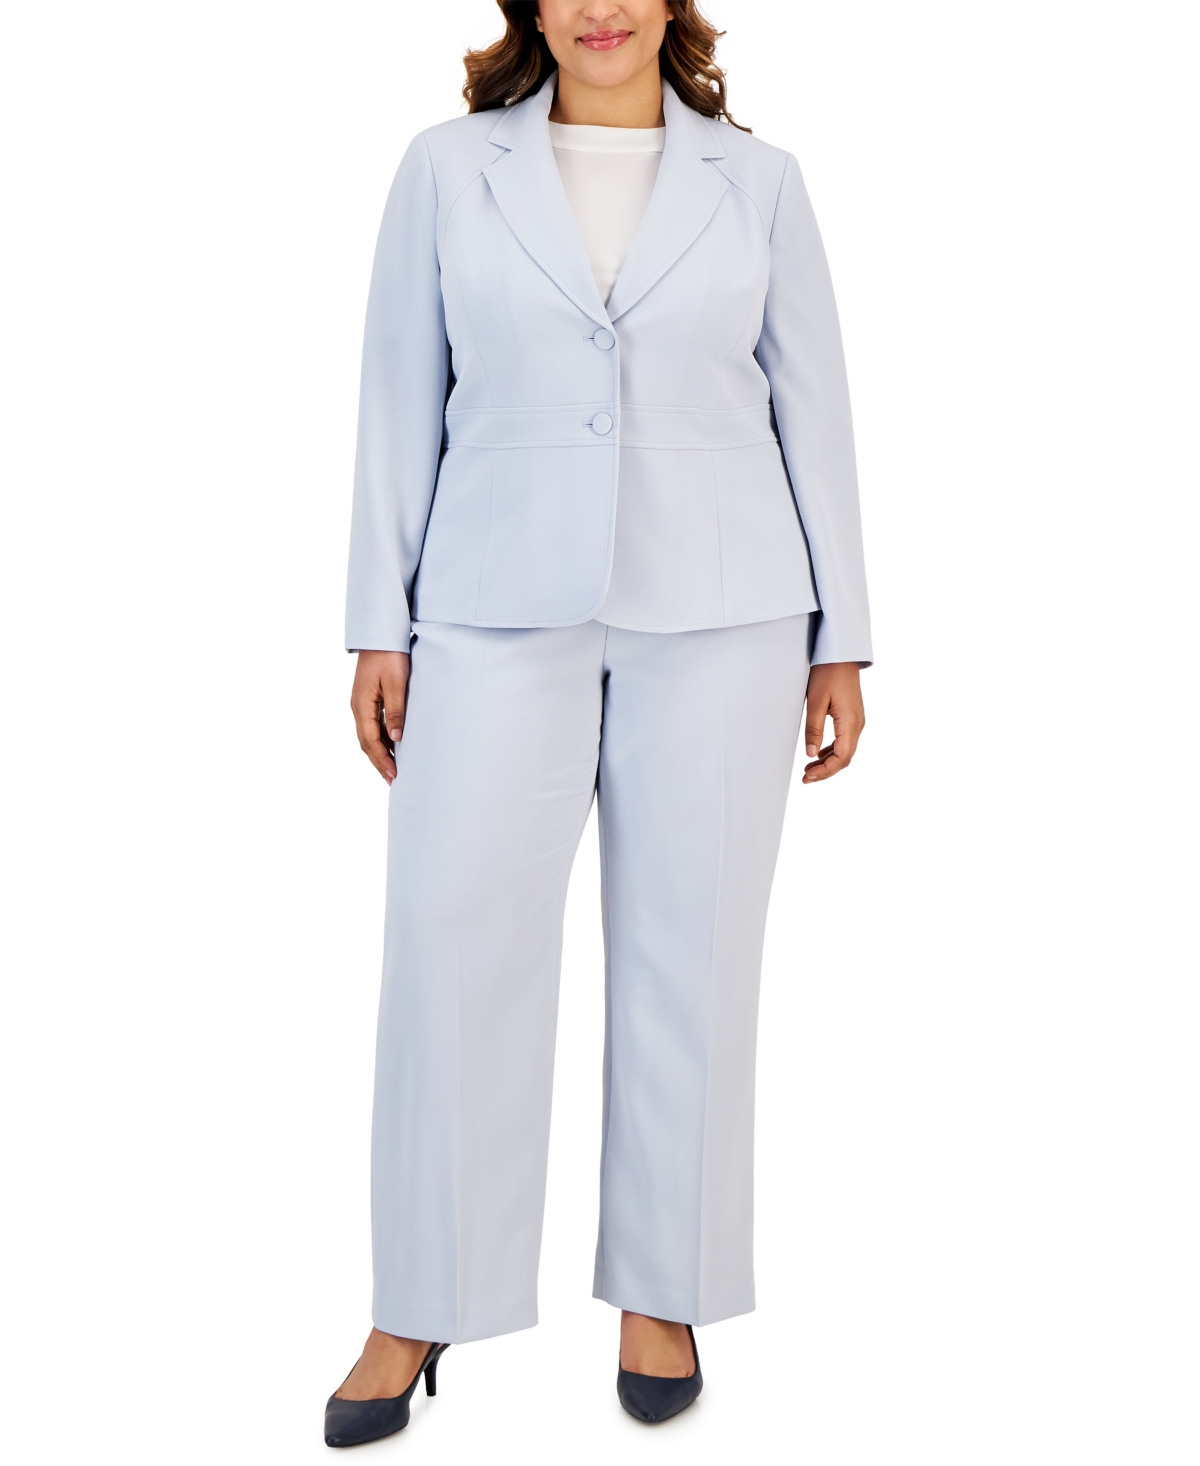 Le Suit Plus Size Crepe Two-button Blazer Pantsuit In Powder Blue